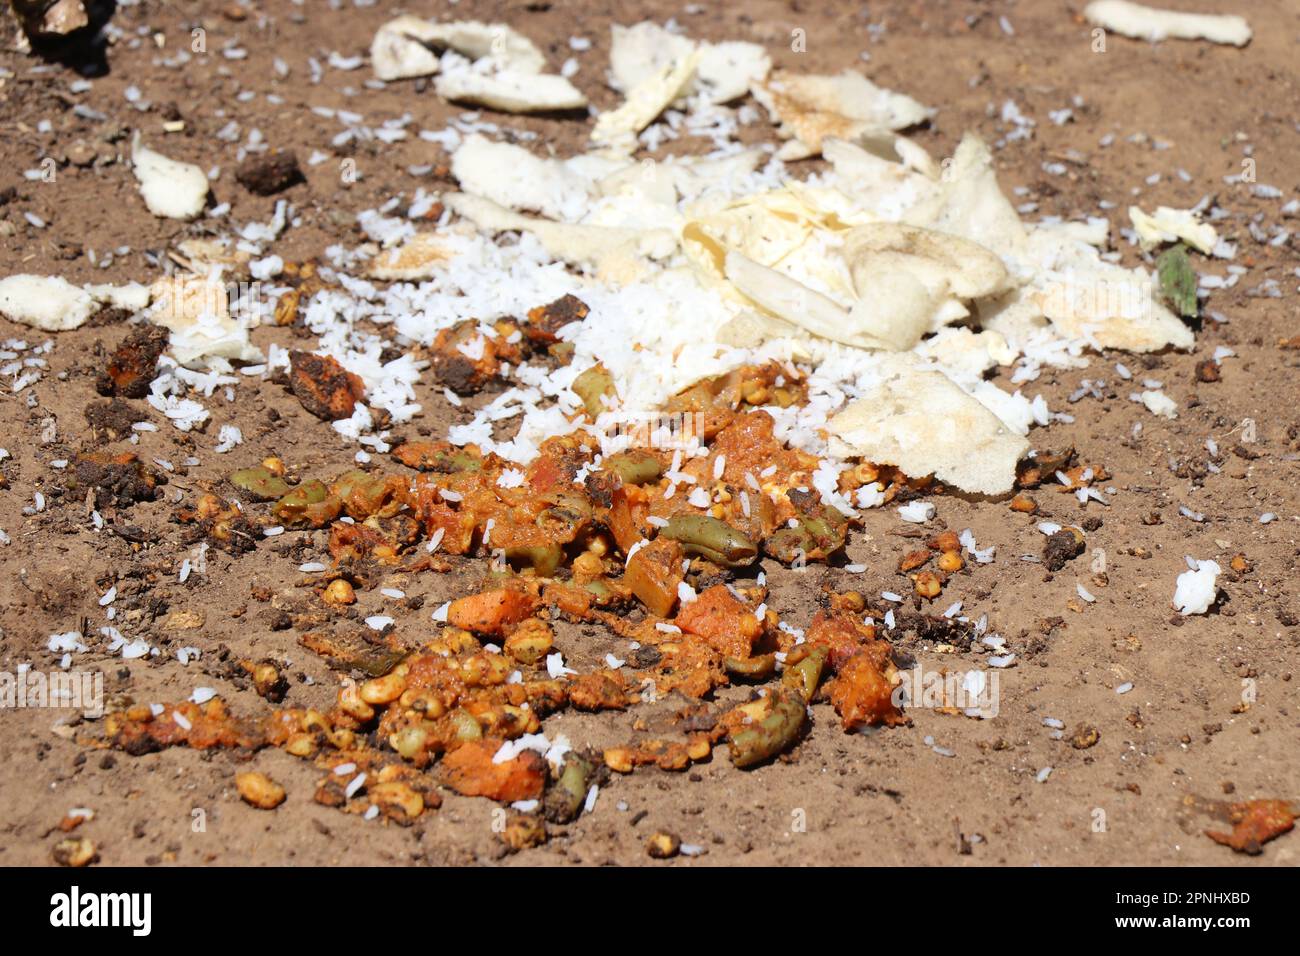 Vergeudete Lebensmittel auf dem Boden, die aus Roti und pflanzlichem Curry bestehen, zeigen das Konzept, dass man Lebensmittel nicht verschwenden darf Stockfoto